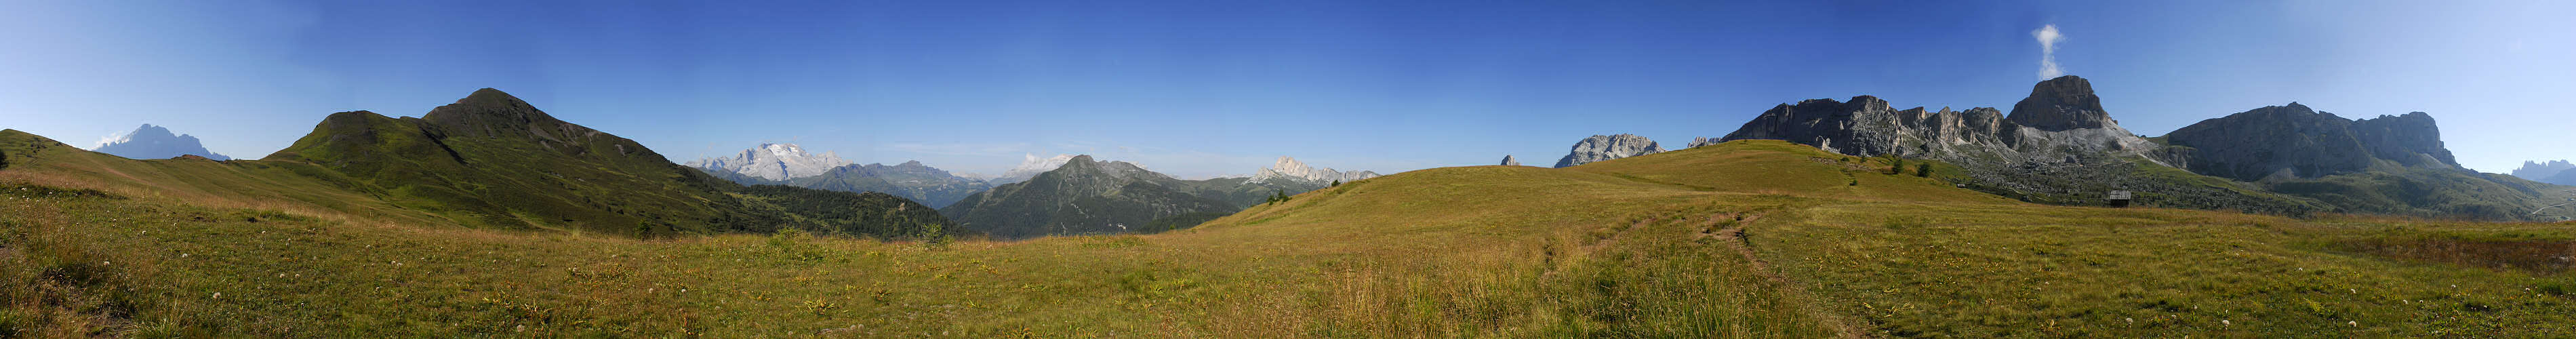 Dolomiti, Monte Pore, passo Giau gruppo del Pelmo